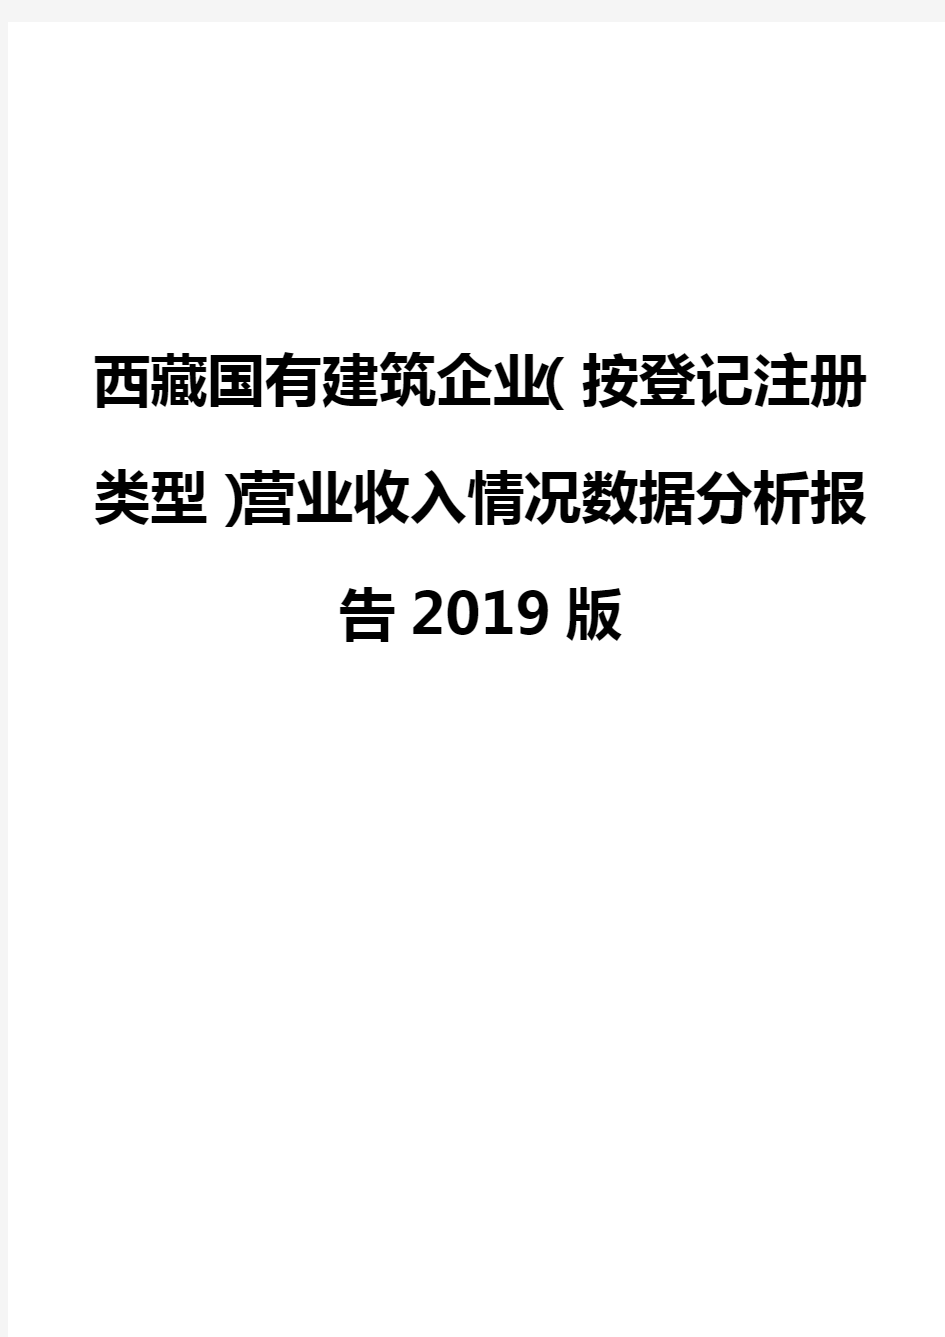 西藏国有建筑企业(按登记注册类型)营业收入情况数据分析报告2019版